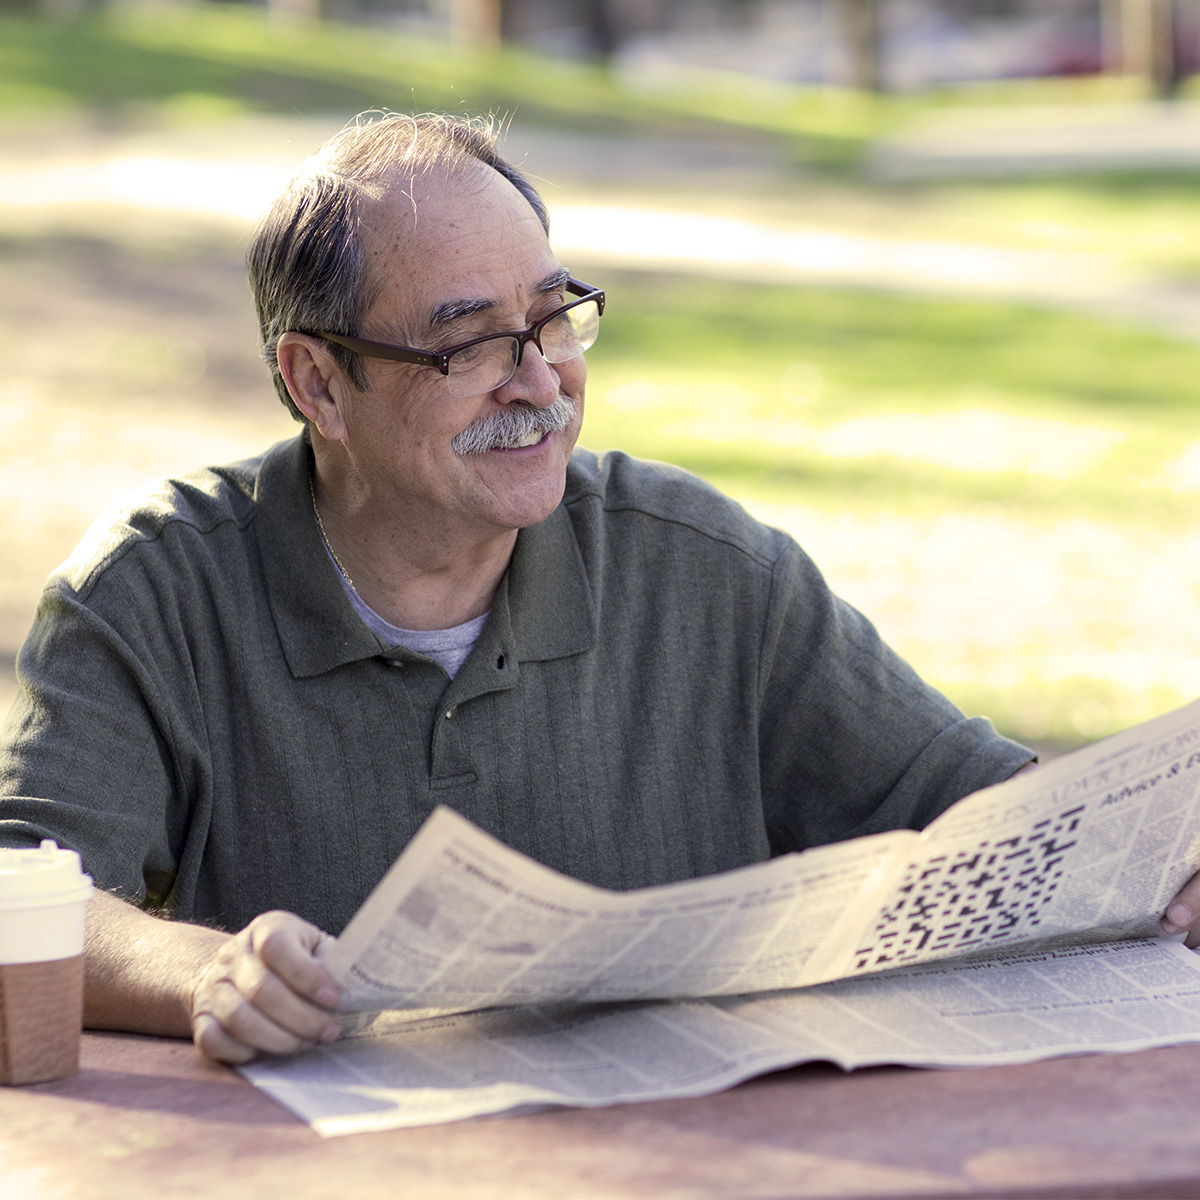 Un hombre disfrutando un café y leyendo el periódico en el parque, en un día agradable.